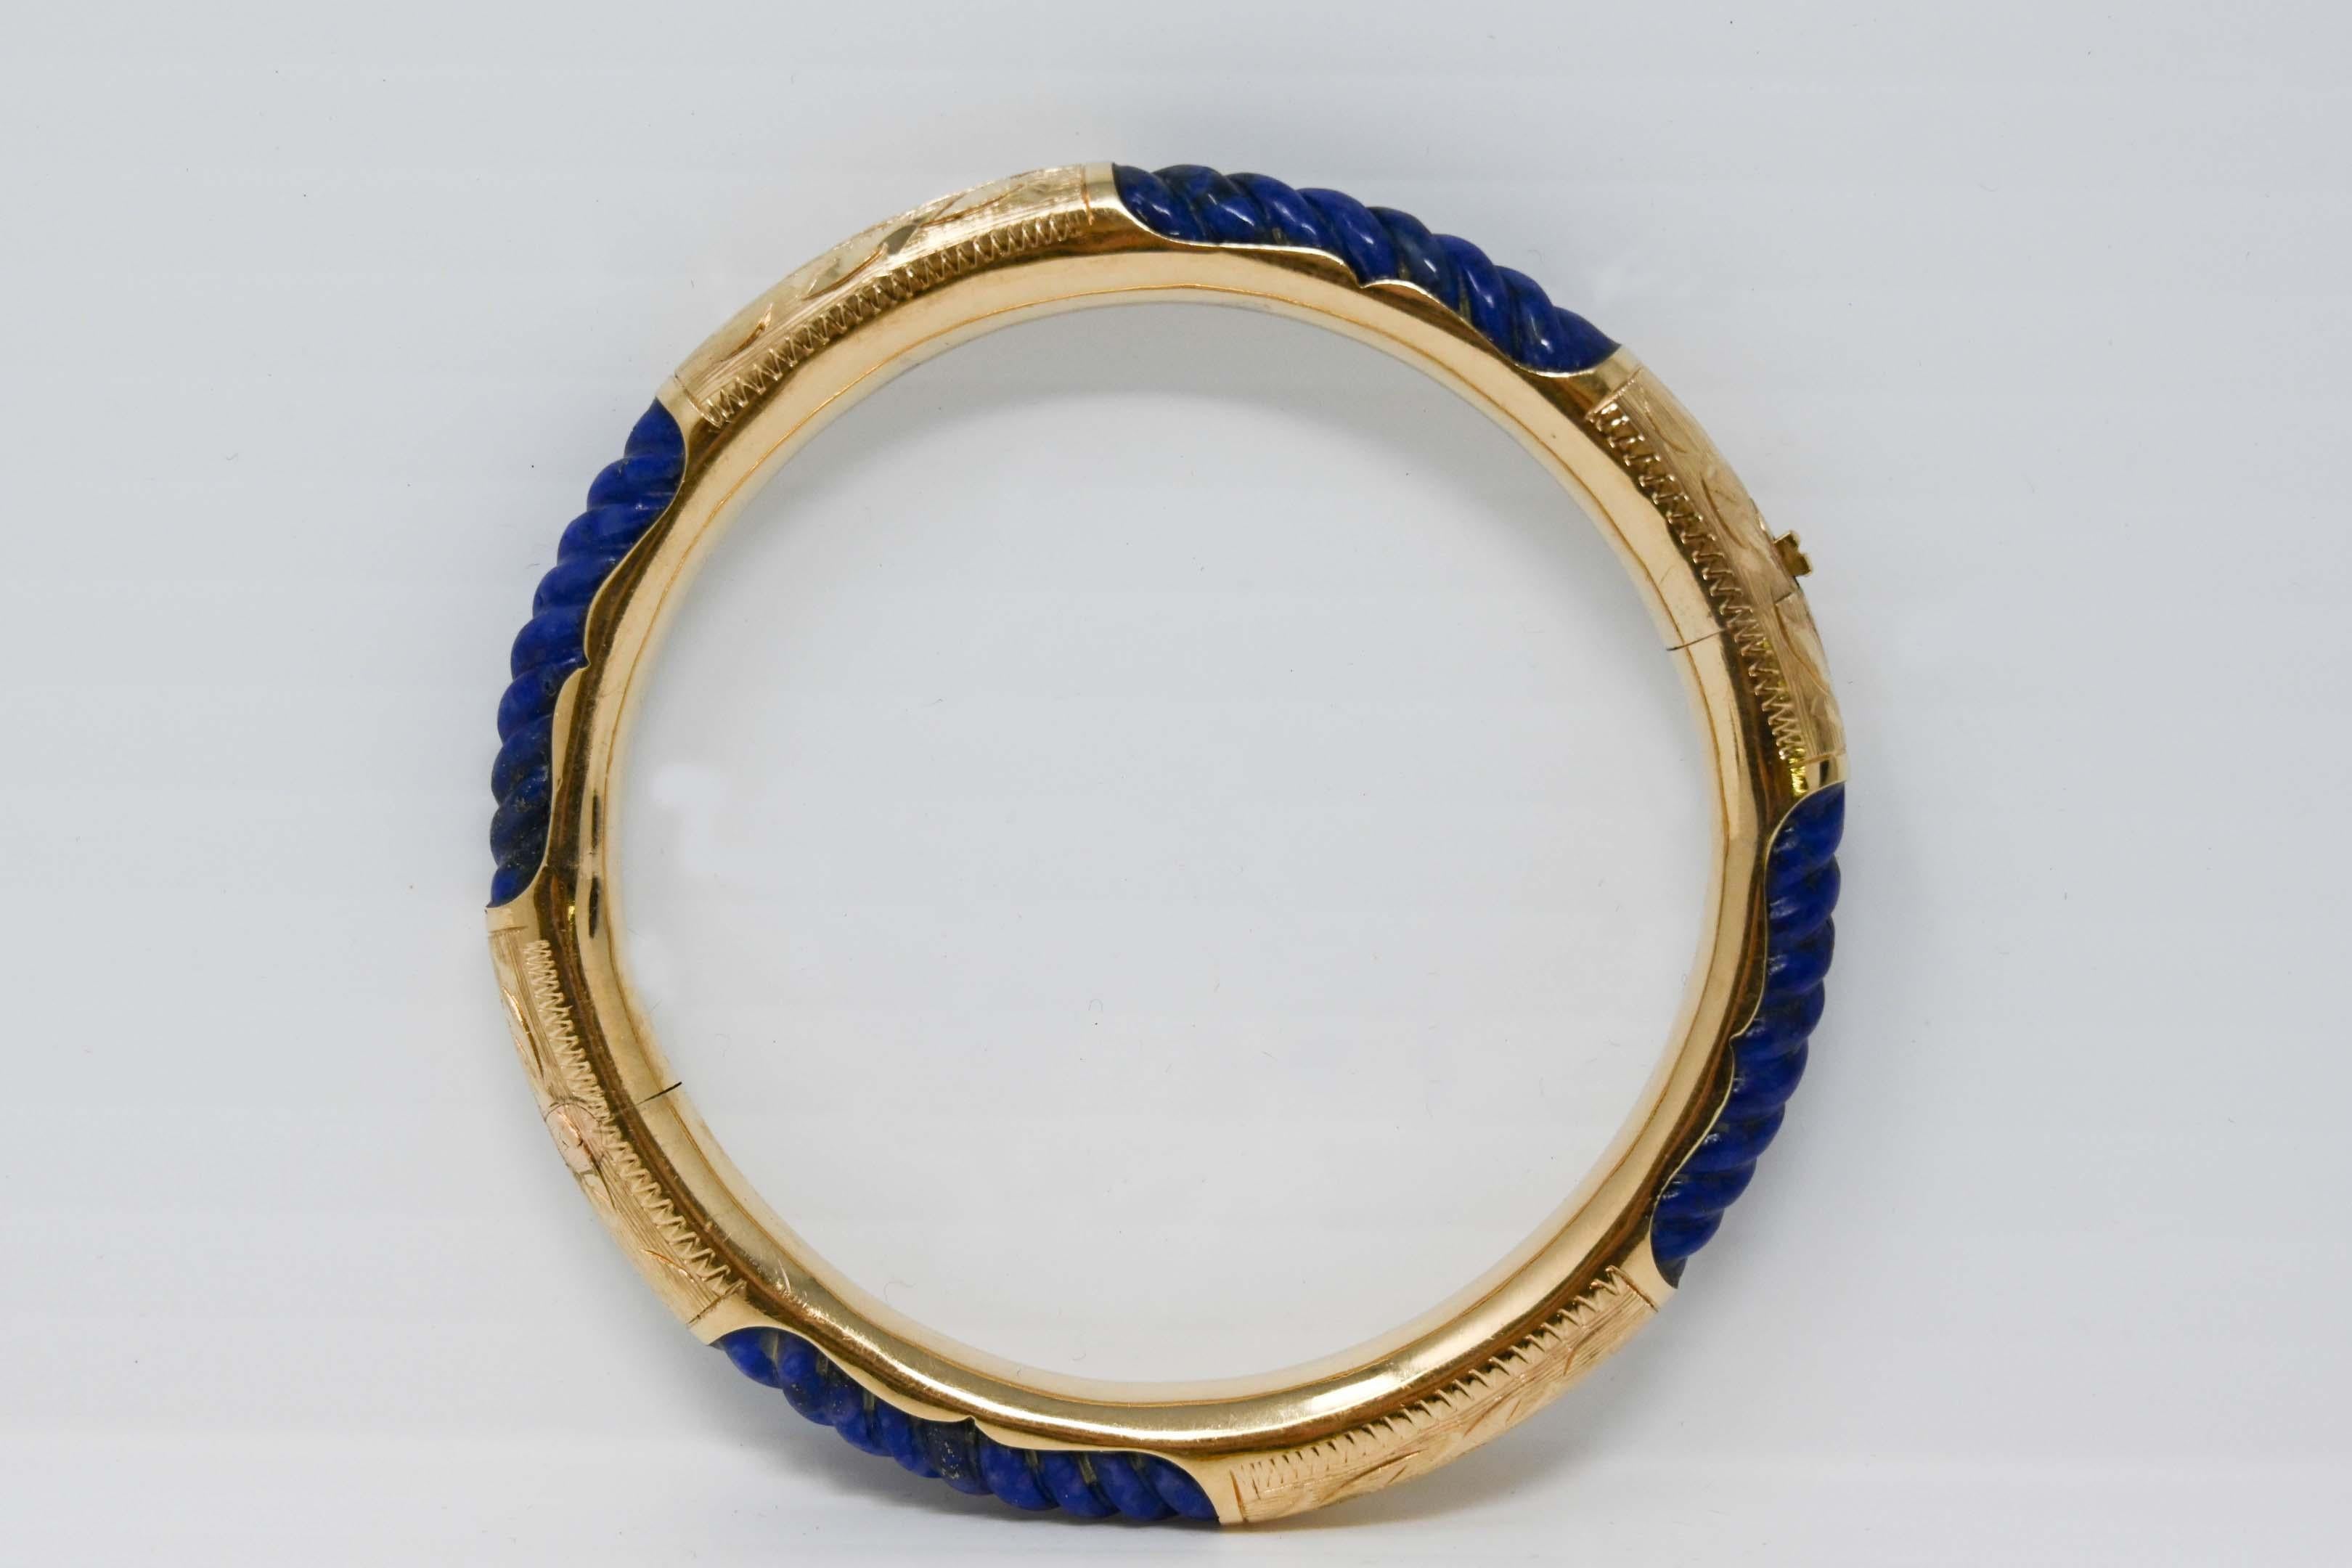 bracelet bangle en or jaune 14k et pierre Lapis Lazuli torsadée. Mesure 2 1/4 pouces de diamètre intérieur et 2 3/4 pouces de diamètre extérieur. Pèse 23,3 grammes. Estampillé 14k, fabricant inconnu.
